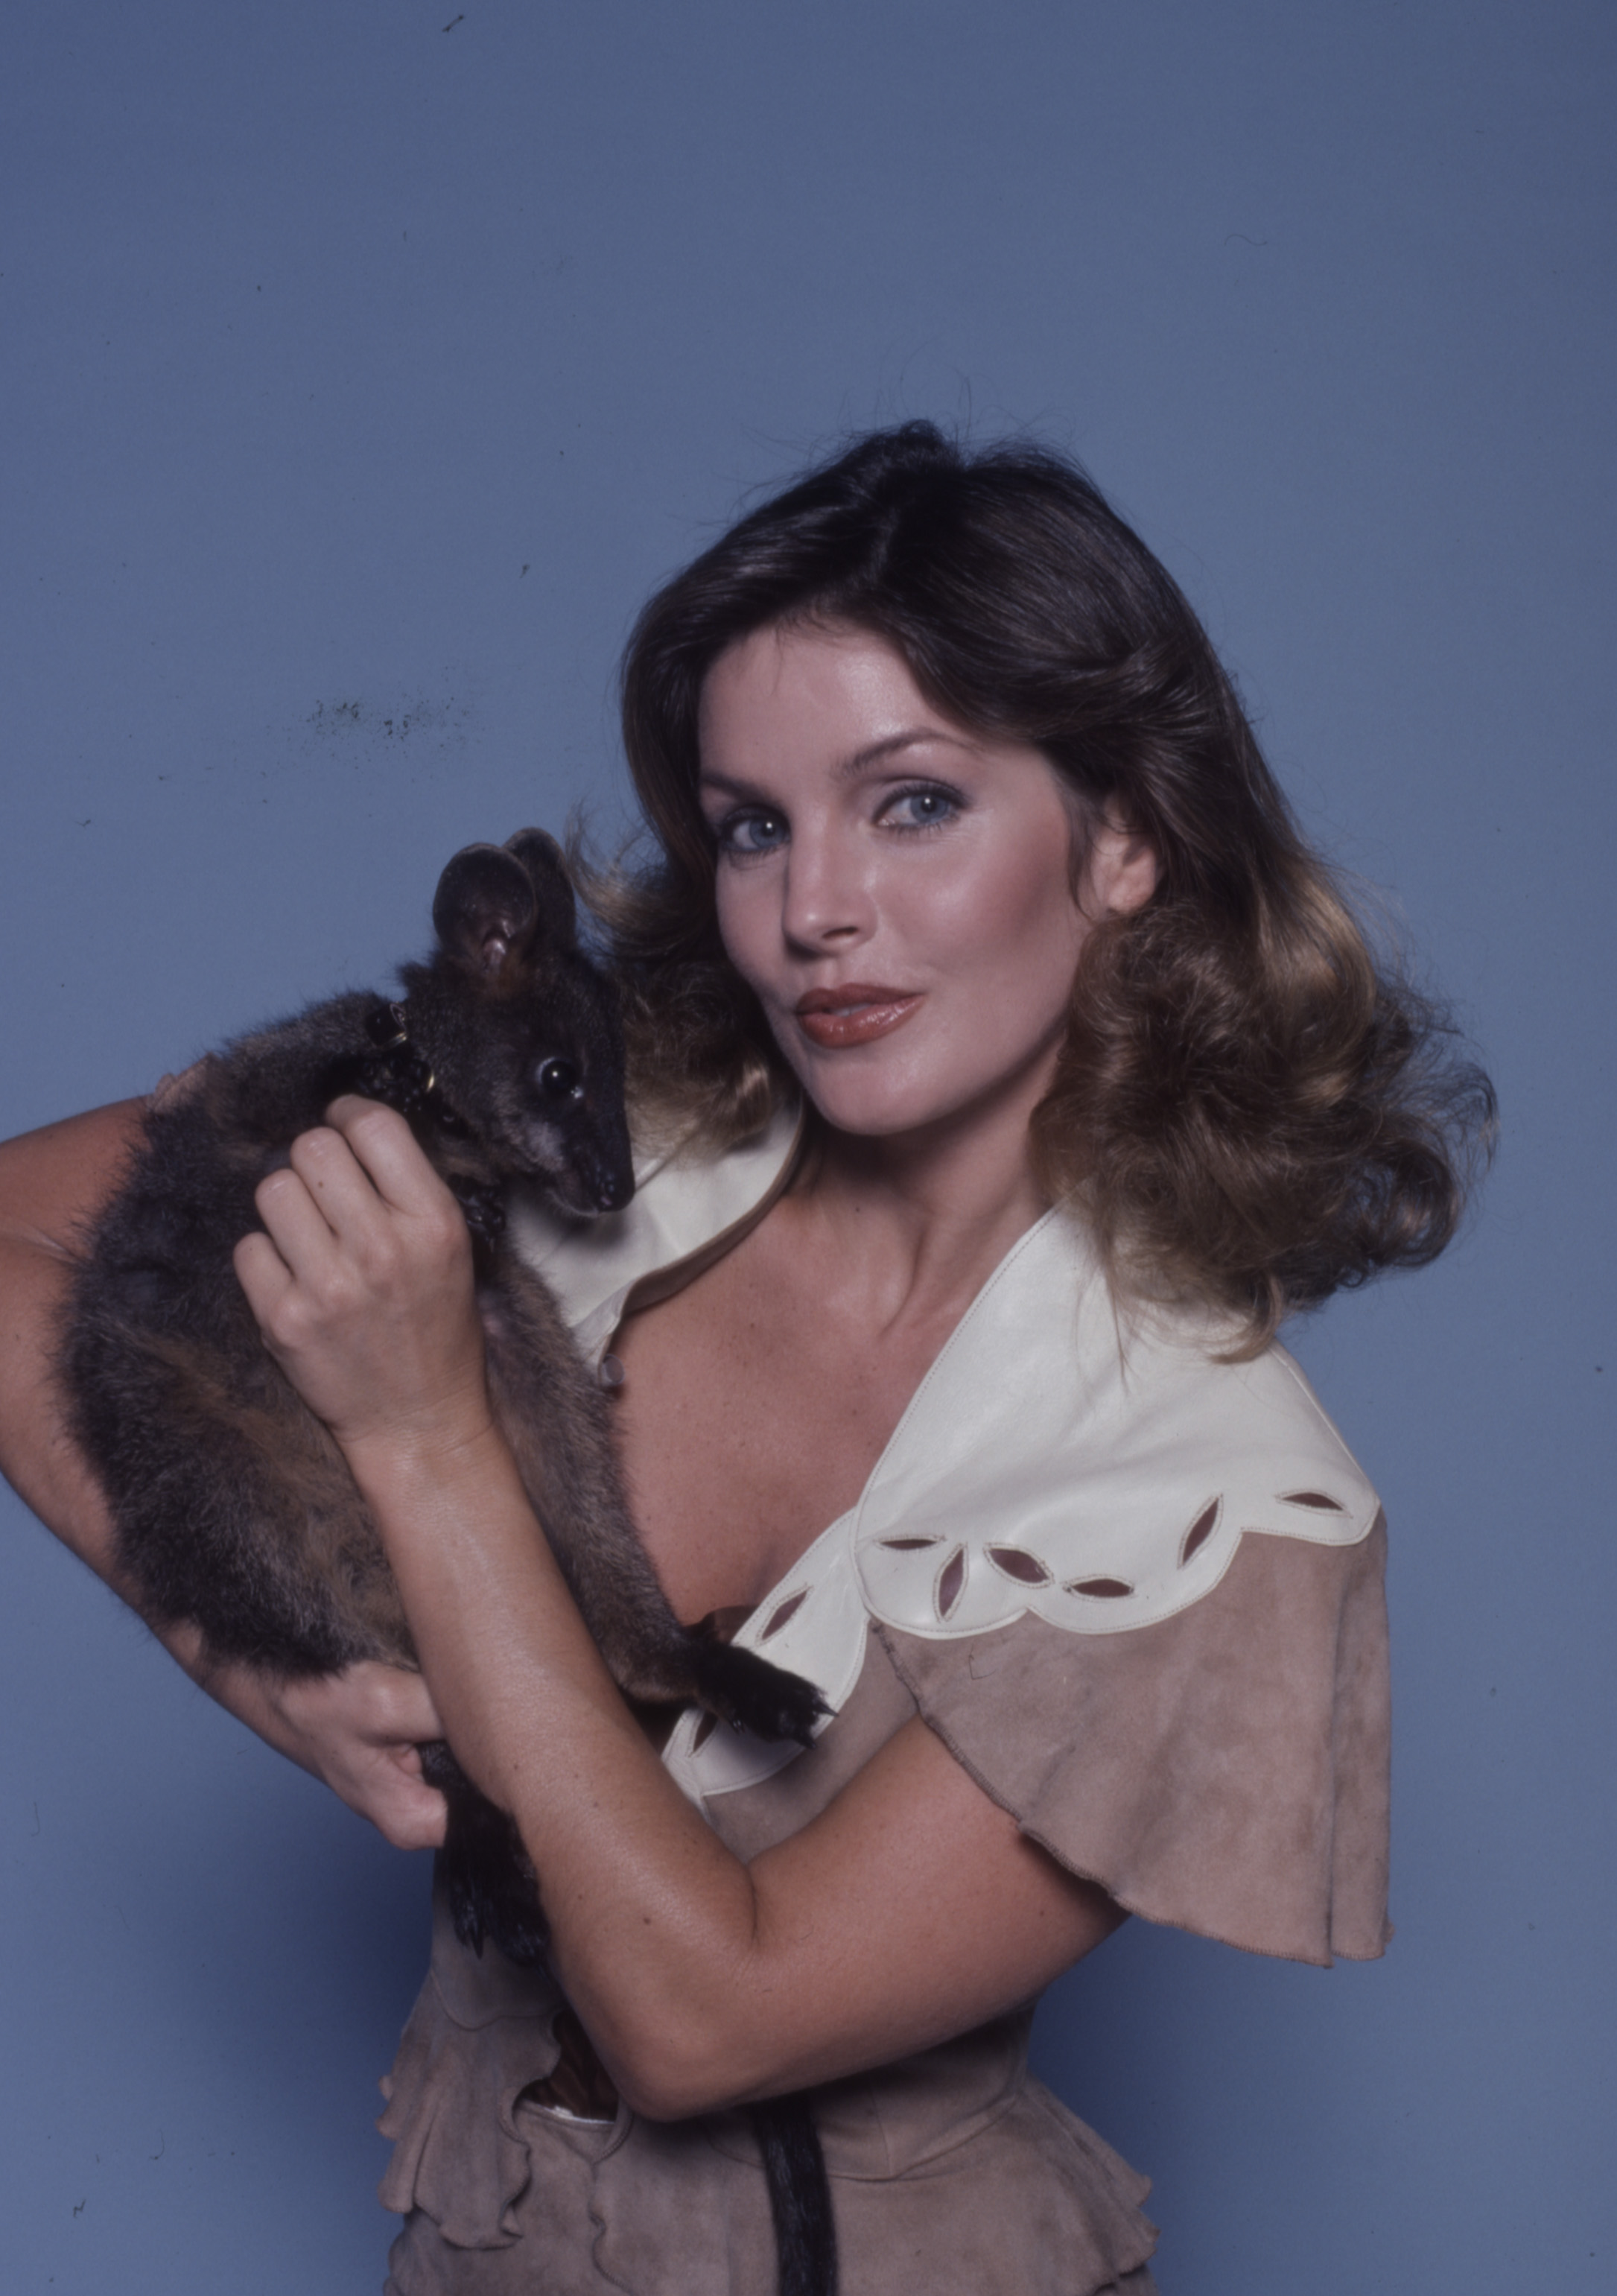 Priscilla Presley photo promotionnelle pour la série télévisée ABC "Those Amazing Animals" à Los Angeles, Californie, en 1980. | Source : Getty Images